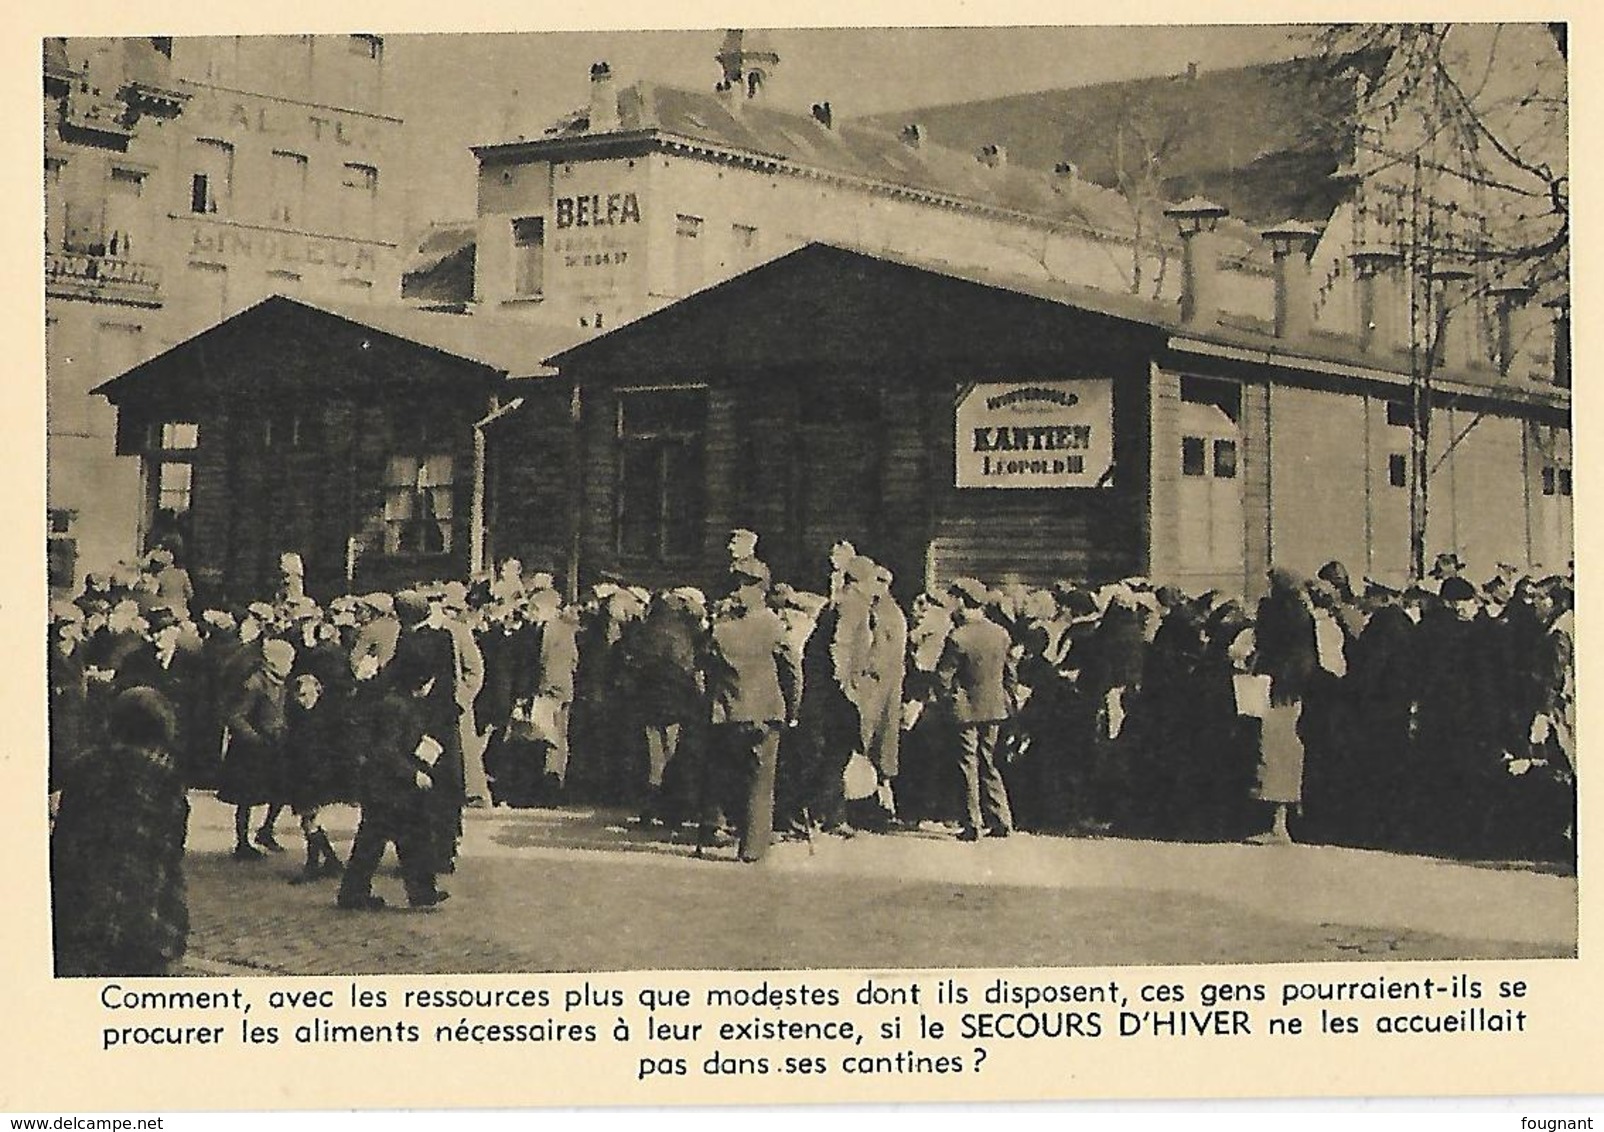 c-SECOURS d'HIVER 1941-10 cartes postales vendues au profit du secours d'hiver- Bruxelles